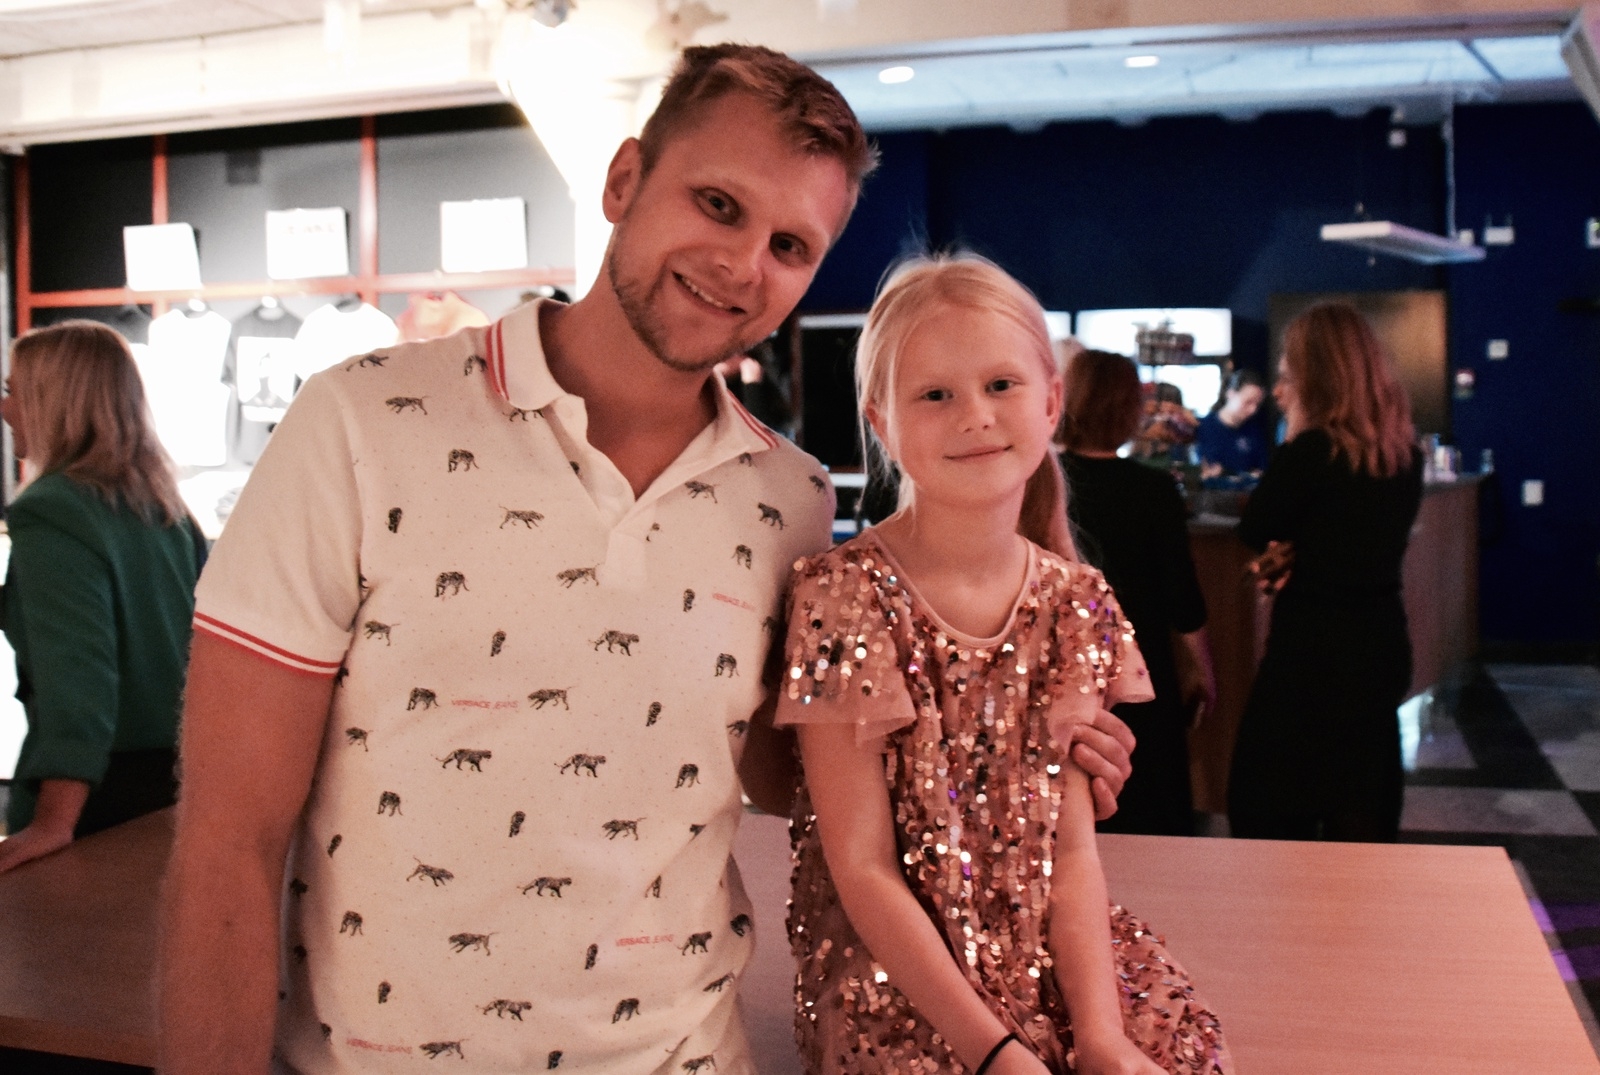 Molly, 8, var det yngsta fanet på plats i Kalmarsalen tillsammans med pappa Michael Sjöstedt.